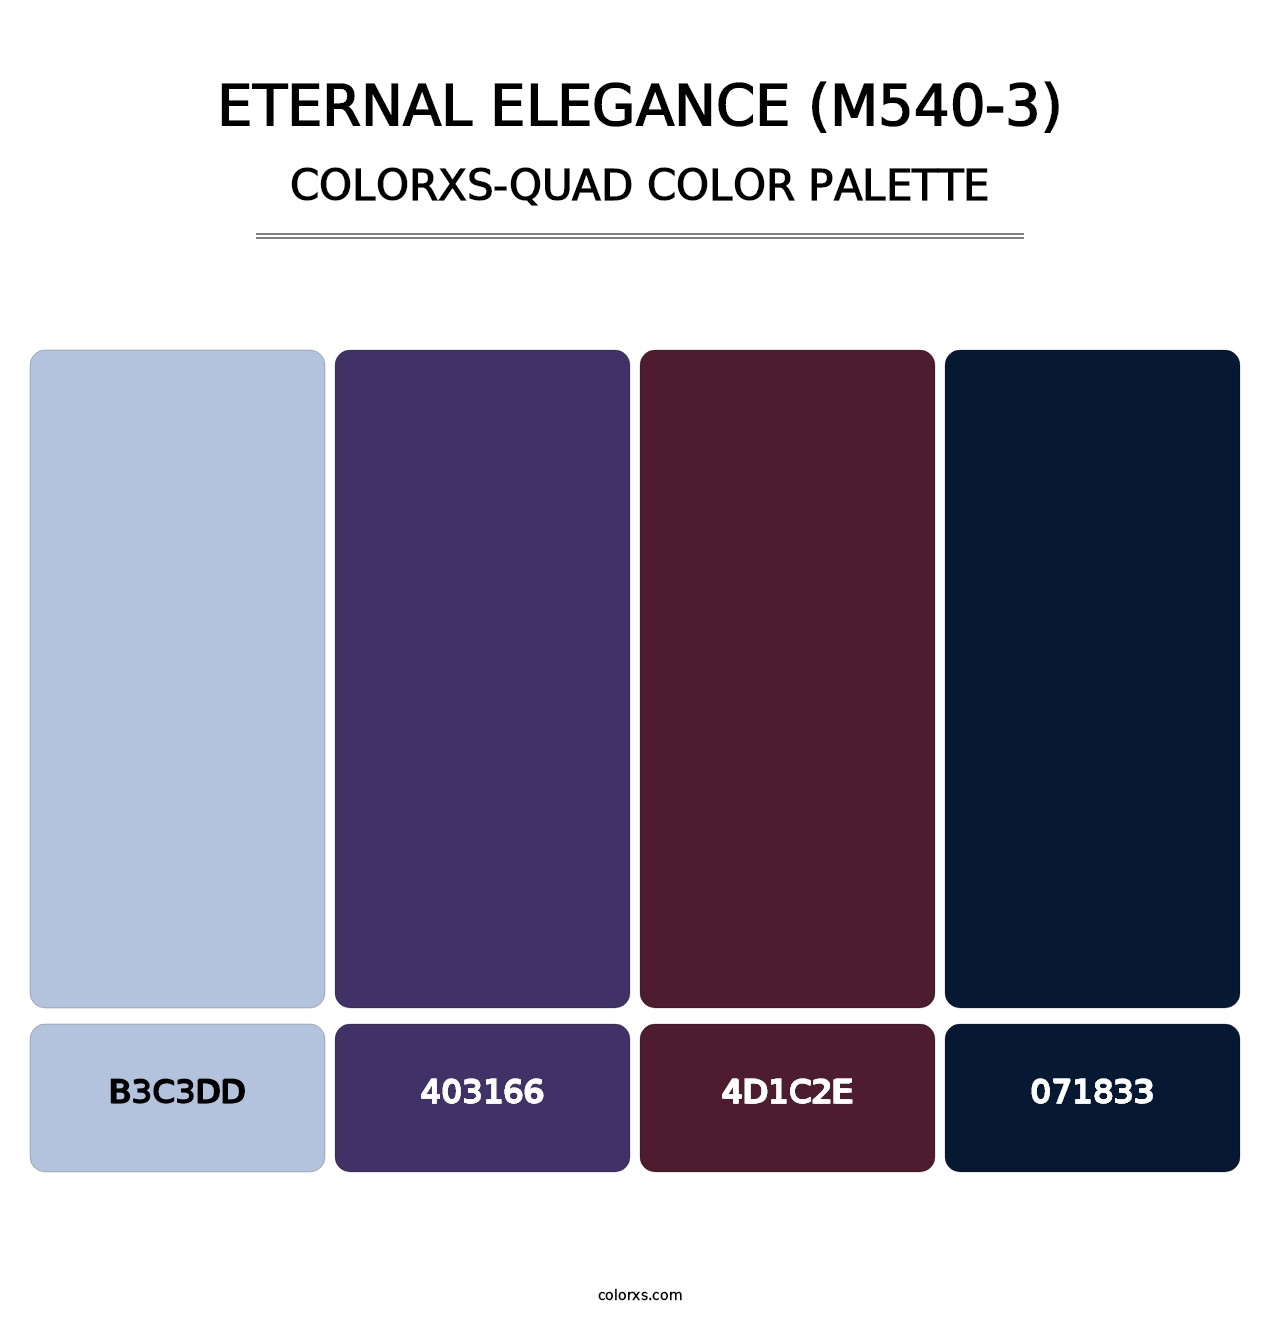 Eternal Elegance (M540-3) - Colorxs Quad Palette